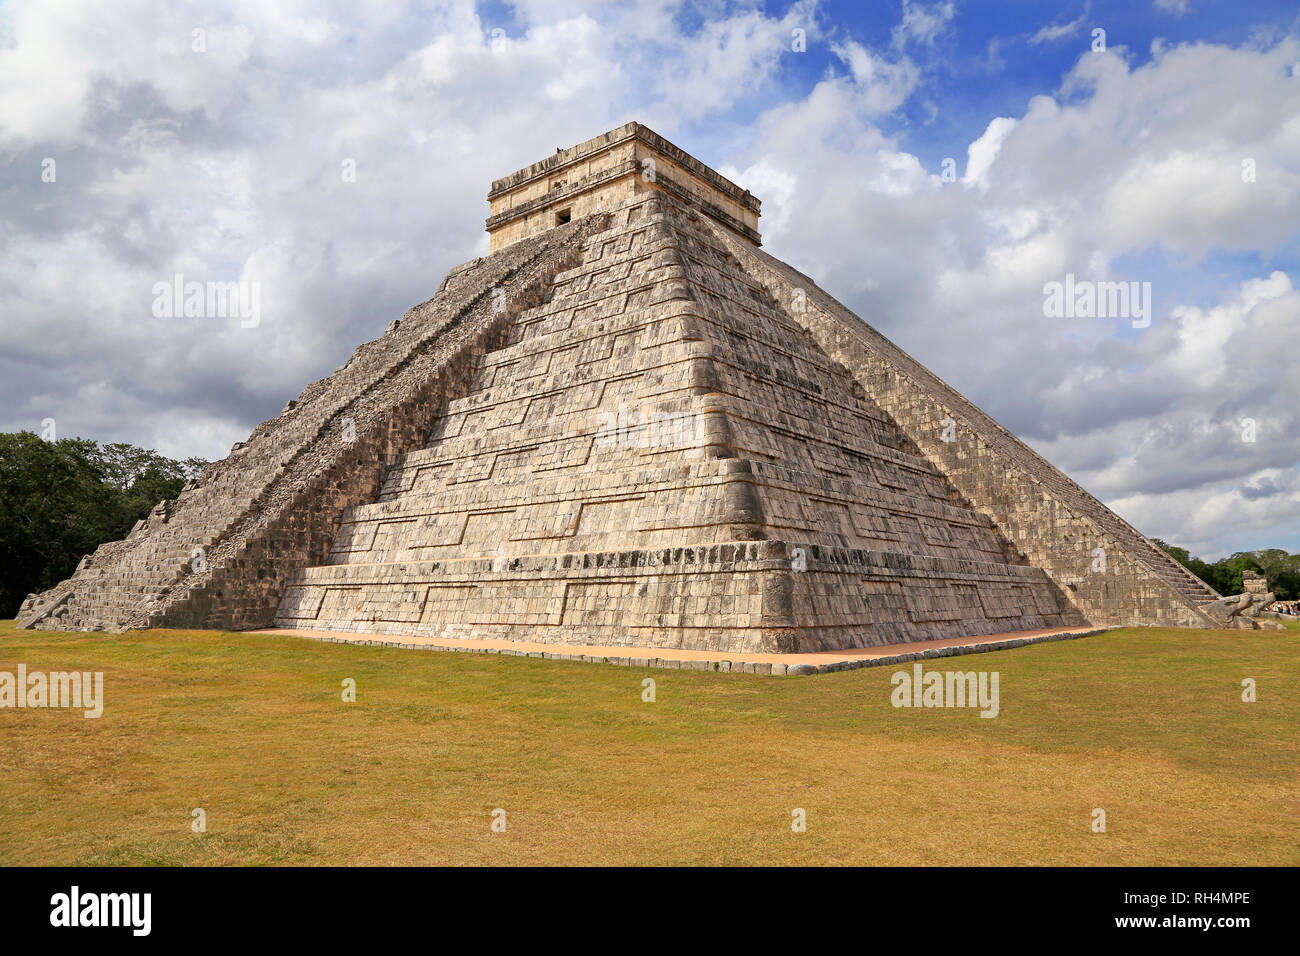 El Castillo or Temple of Kukulcan pyramid in Chichén Itzá, Yucatan, Mexico Stock Photo